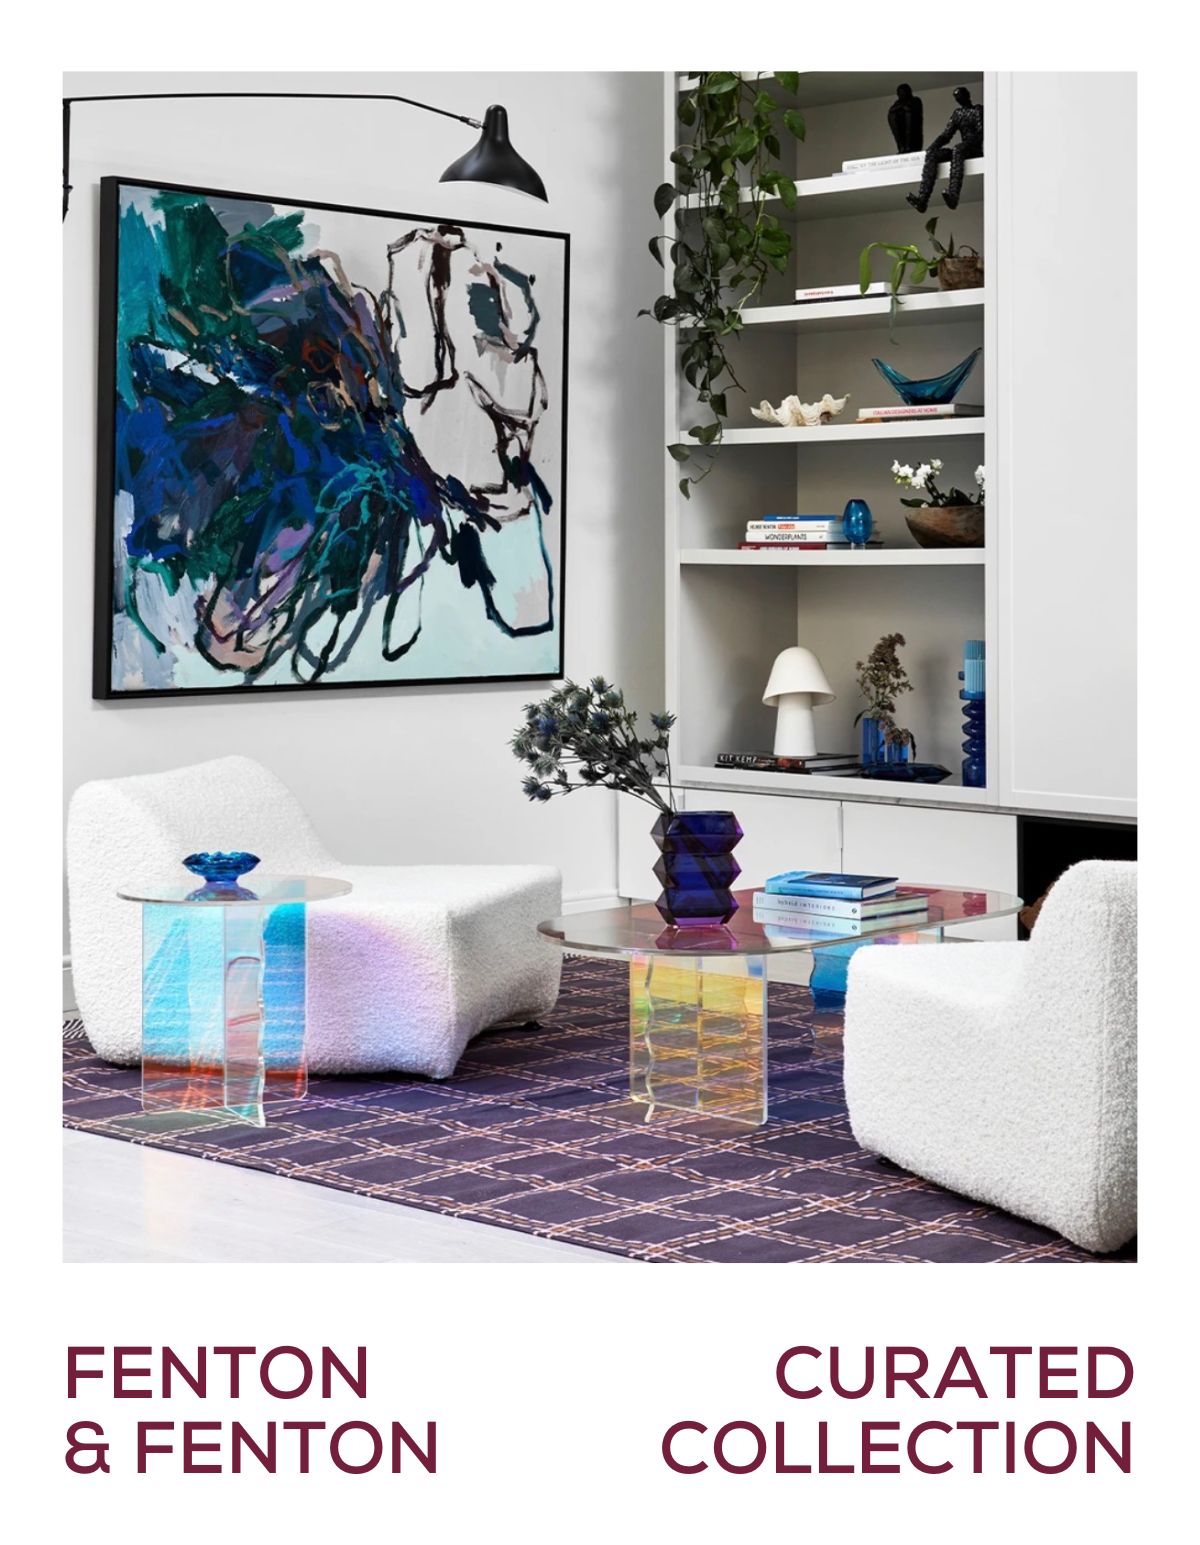 Fenton & Fenton